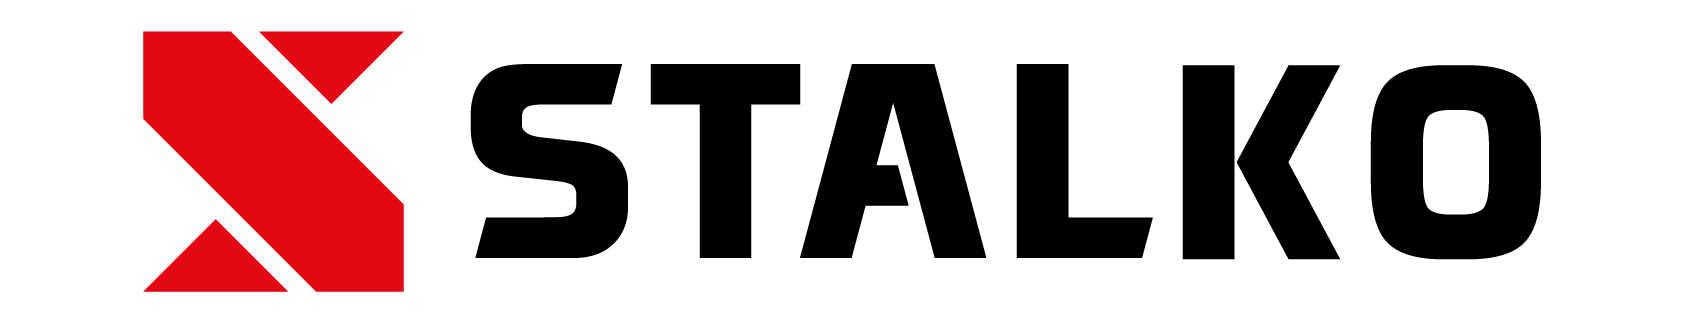 Stalko logo.